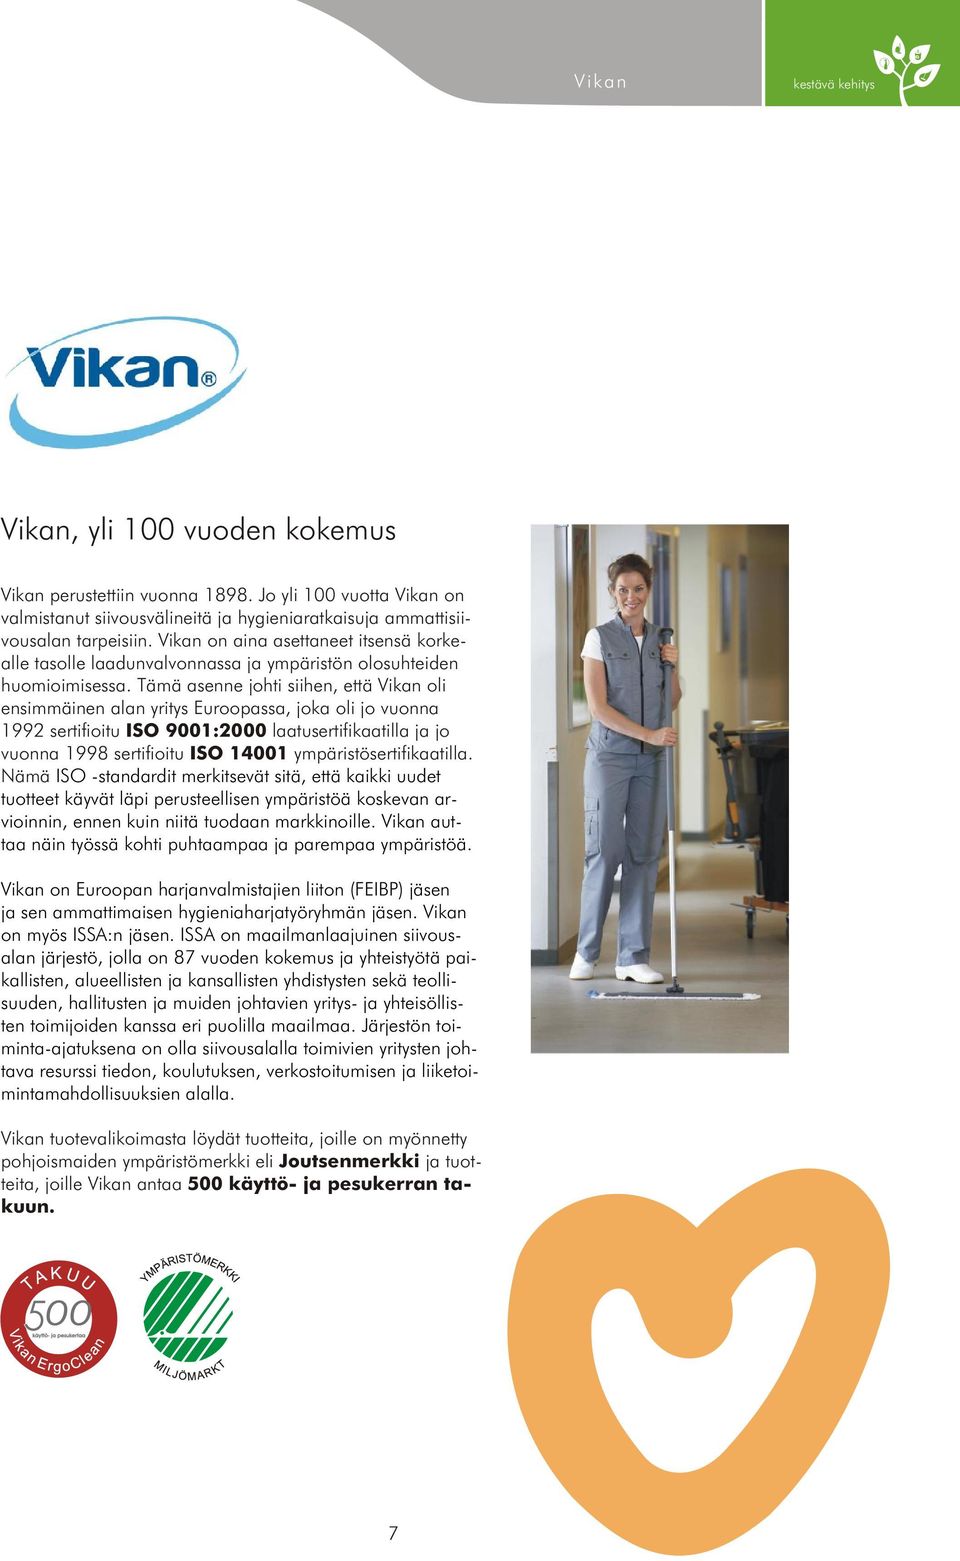 Tämä asenne johti siihen, että Vikan oli ensimmäinen alan yritys Euroopassa, joka oli jo vuonna 1992 sertifioitu ISO 9001:2000 laatusertifikaatilla ja jo vuonna 1998 sertifioitu ISO 14001